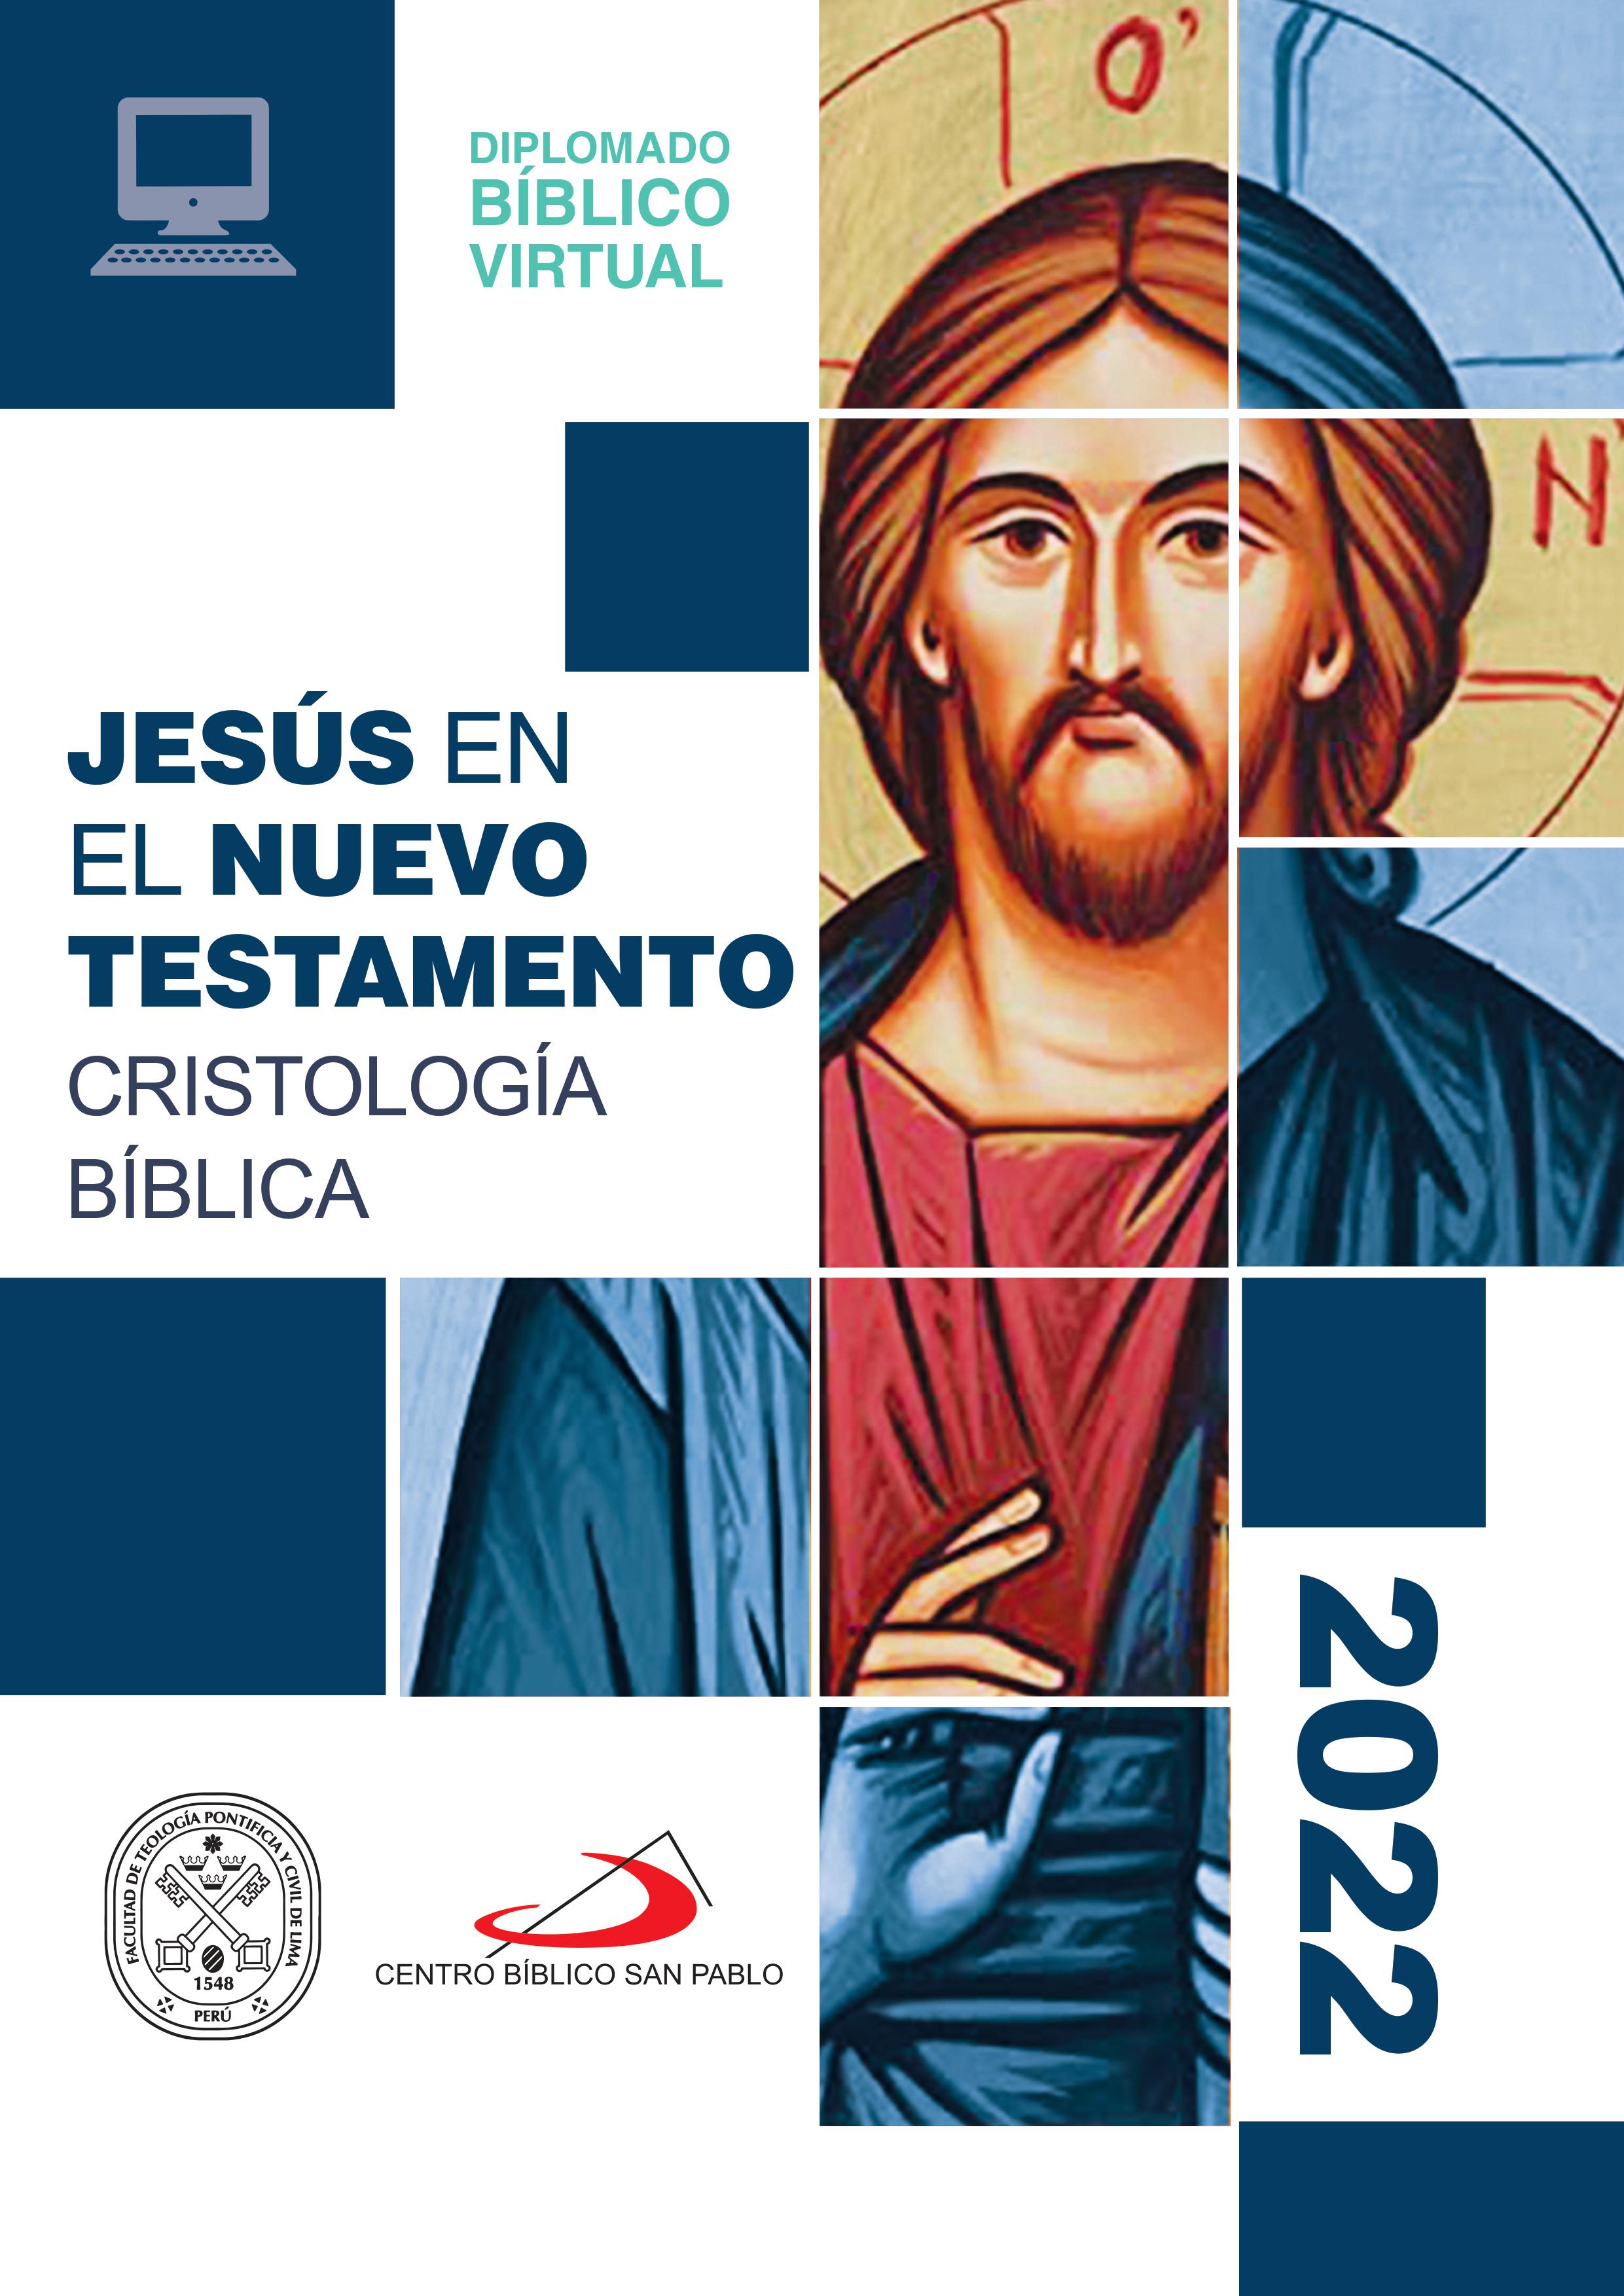 Brief Diplomado Virtual Jesús en el Nuevo Testamento Cristología Bíblica